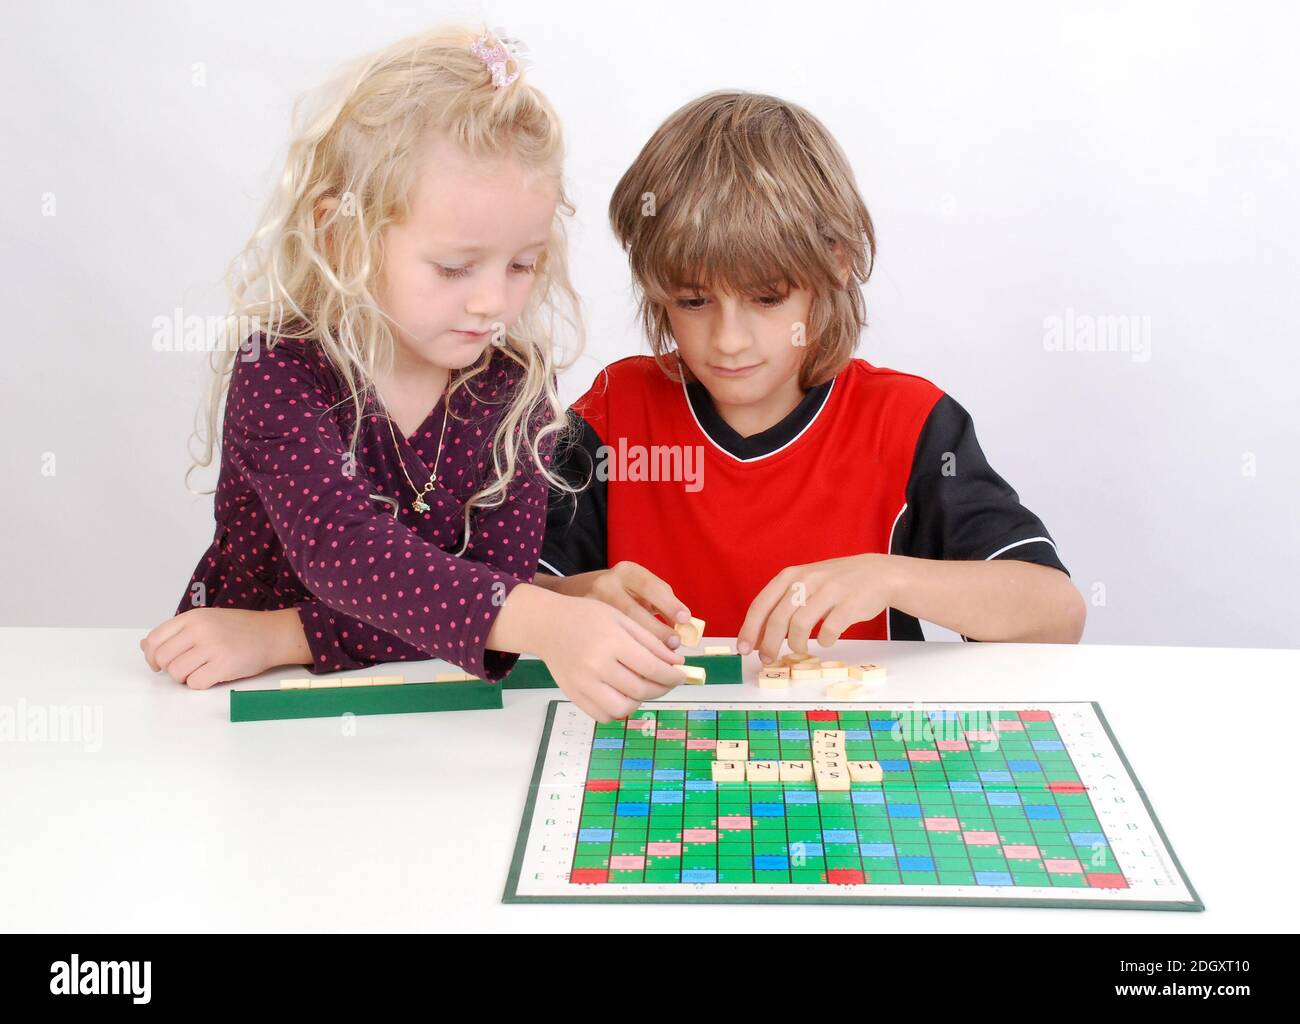 Gecshwister spielen Scrabble, Junge, Mädchen, 7, 8, Jahre, signor:Sì Foto Stock